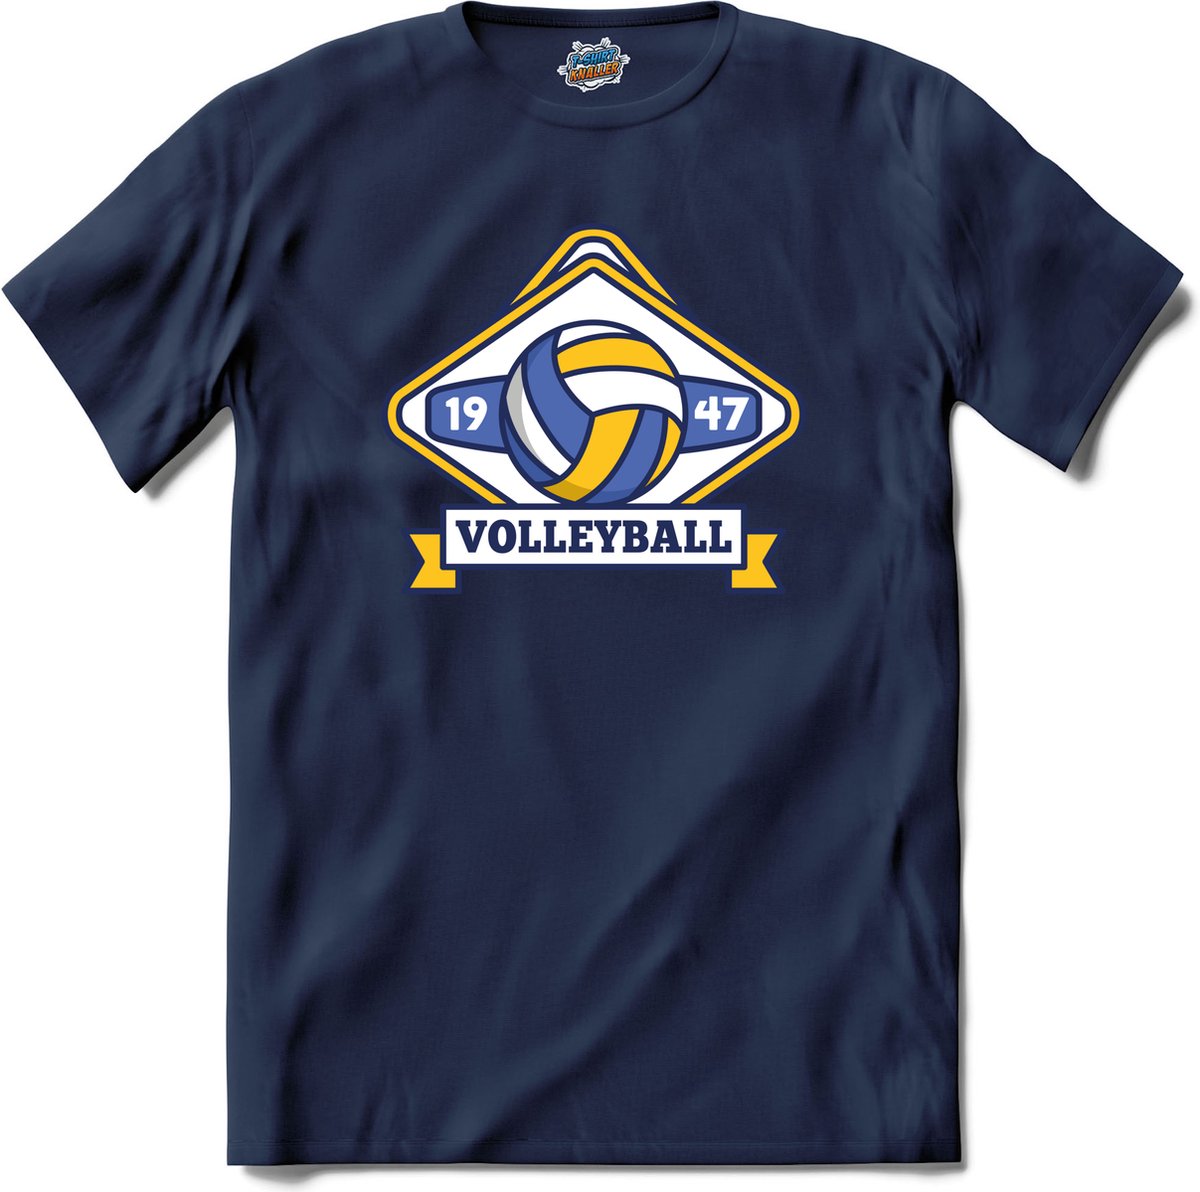 Volleybal sport - T-Shirt - Meisjes - Navy Blue - Maat 6 jaar